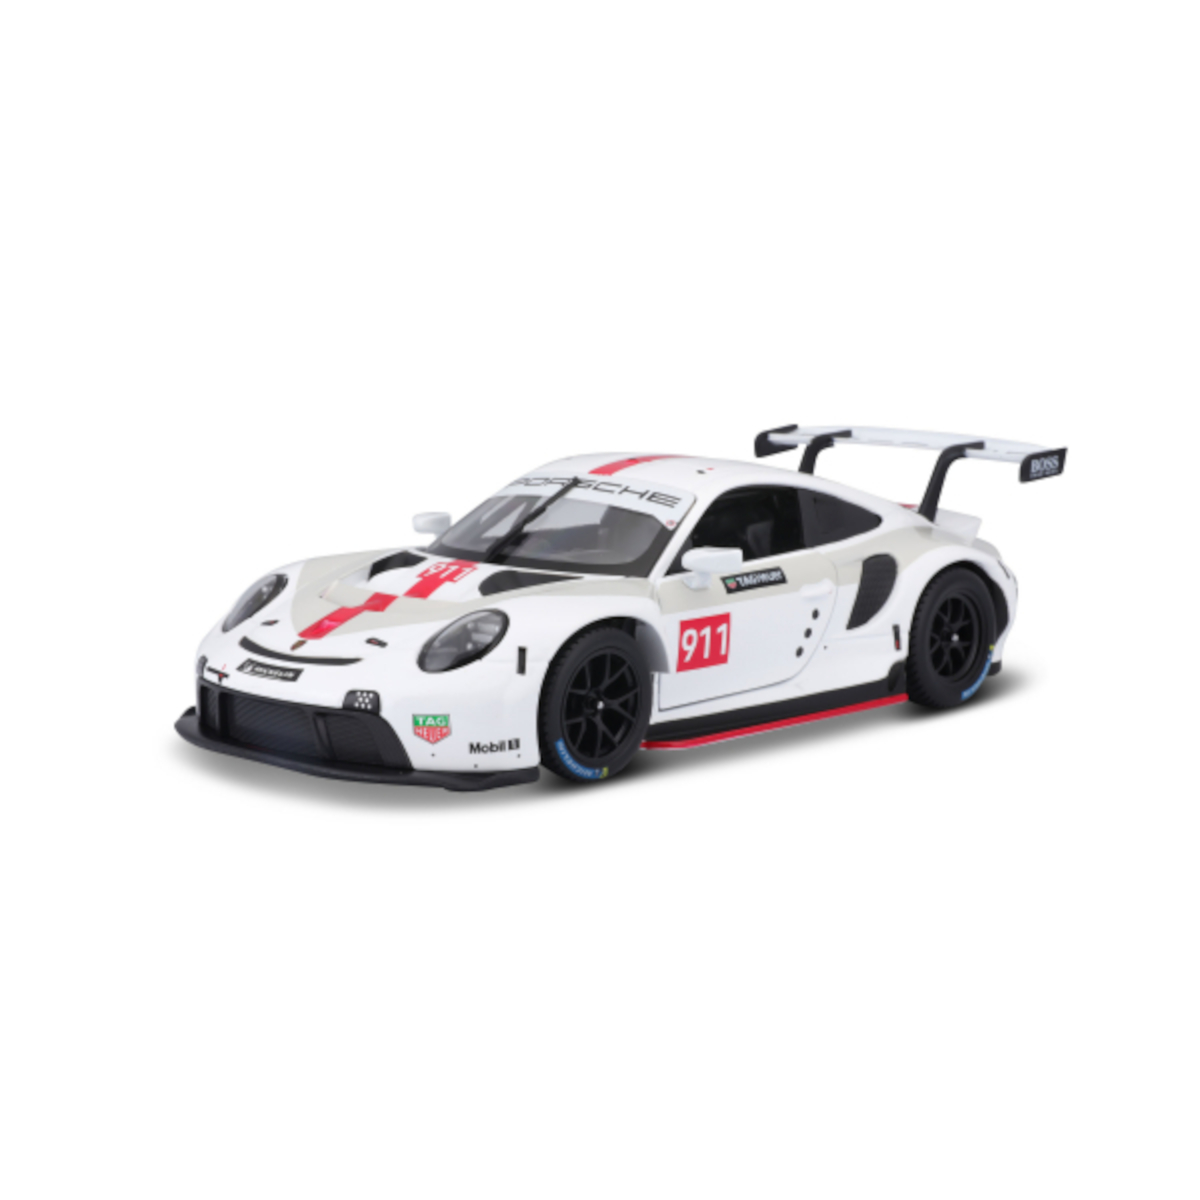 Porsche (weiß, 911 18-38302 1:43) Maßstab RSR Modellauto - BBURAGO Spielzeugauto -